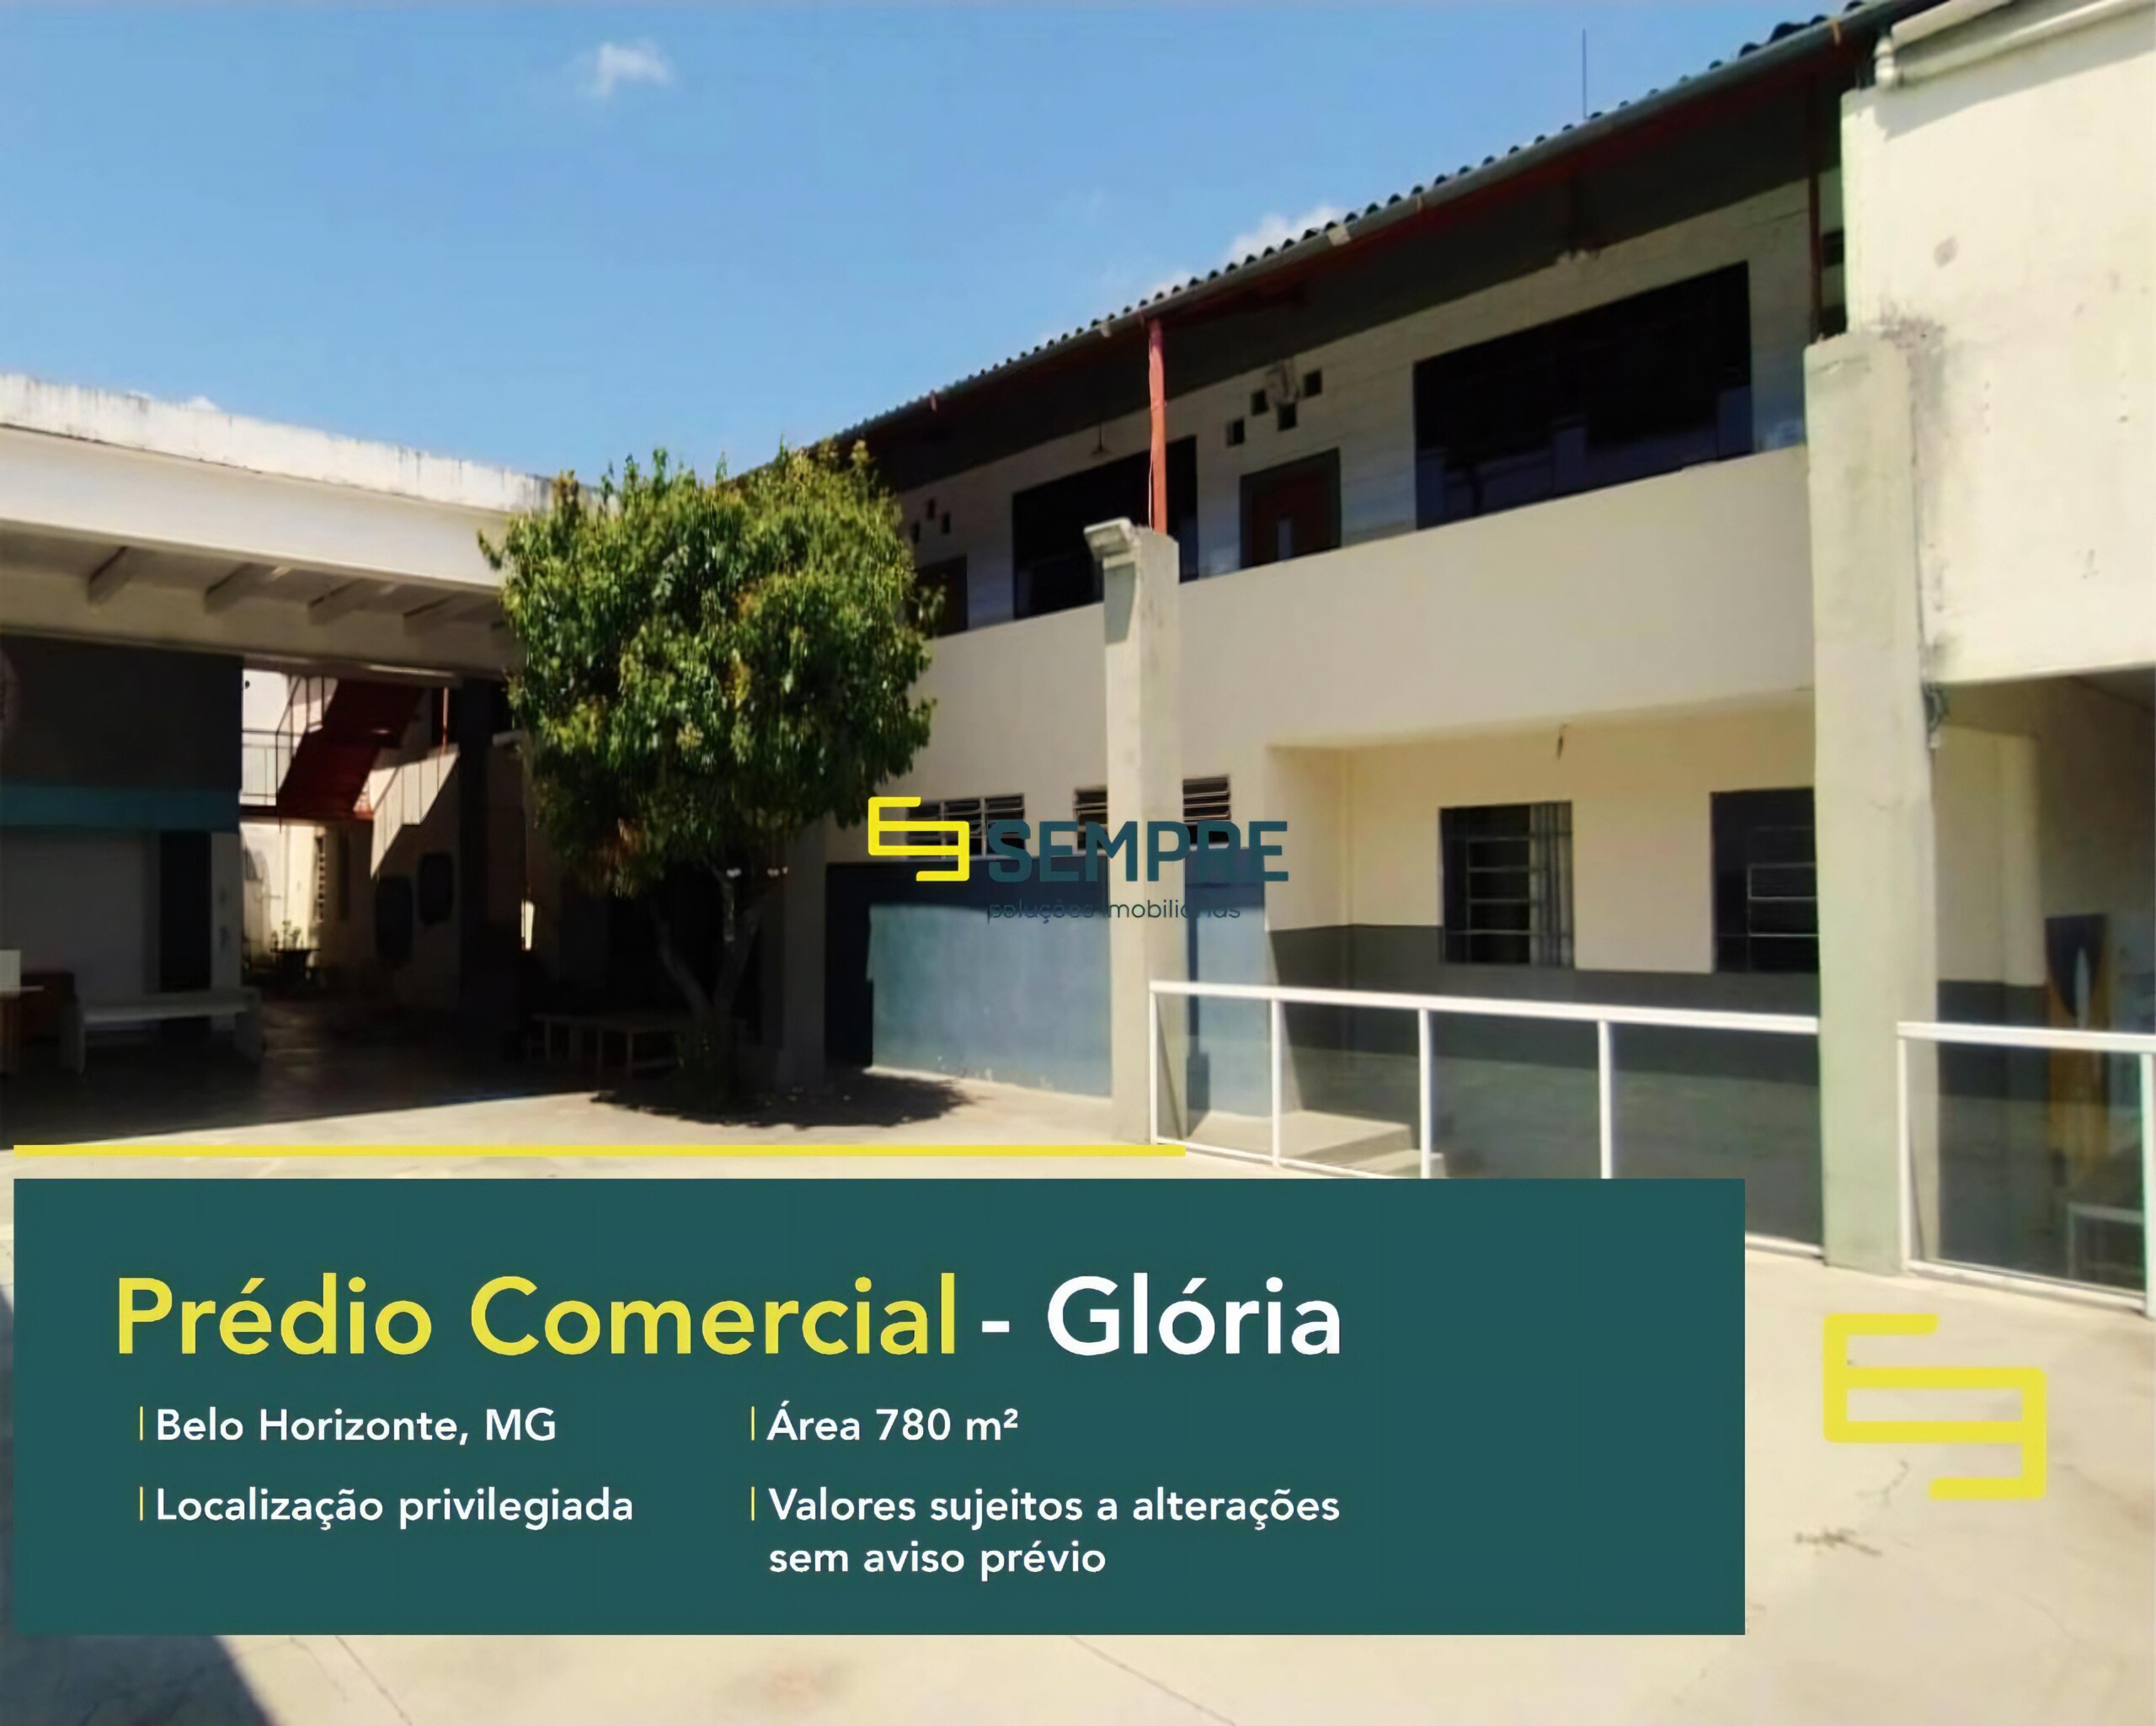 Prédio comercial à venda em Belo Horizonte no bairro Glória, em excelente localização. O estabelecimento comercial conta com área de 780 m².